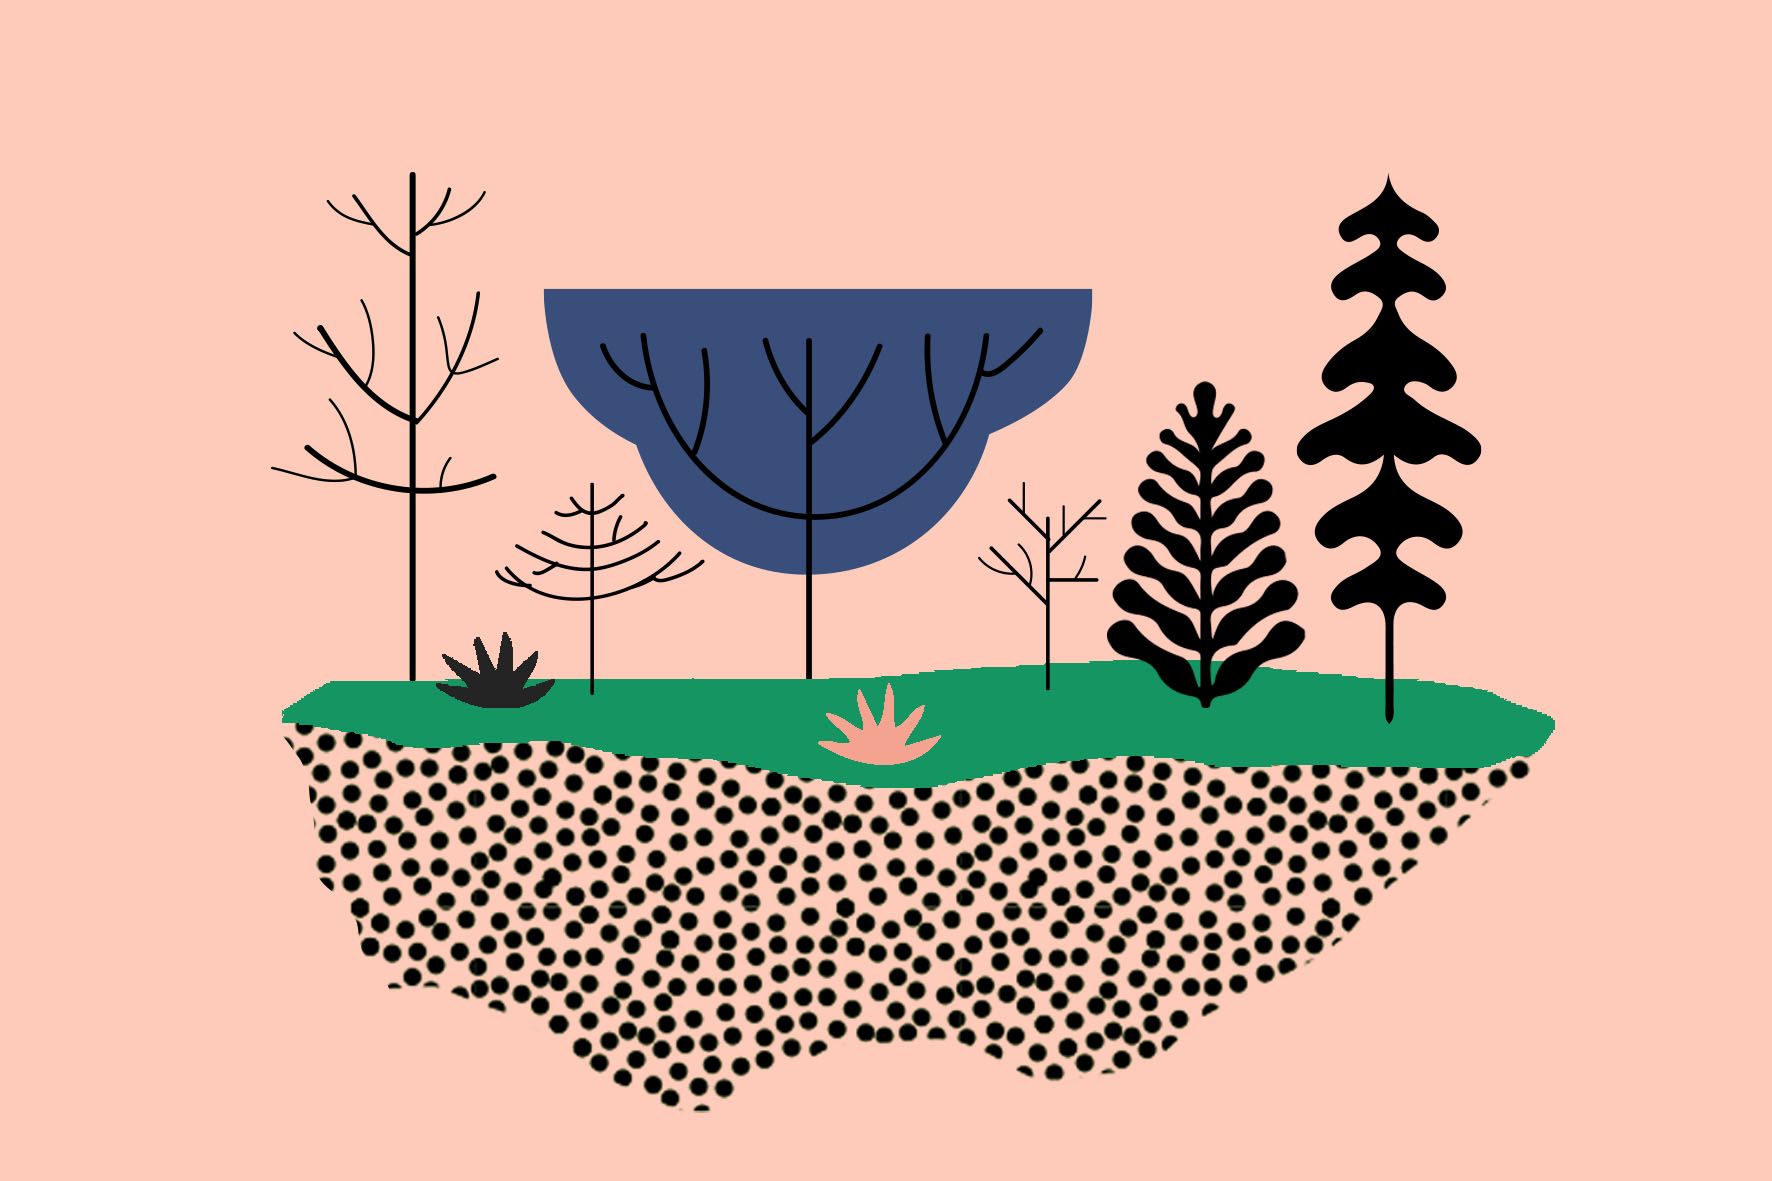 grafika | na łososiowym tle schematycznie narysowane różne formy drzew i ziemia oraz ściółka leśna